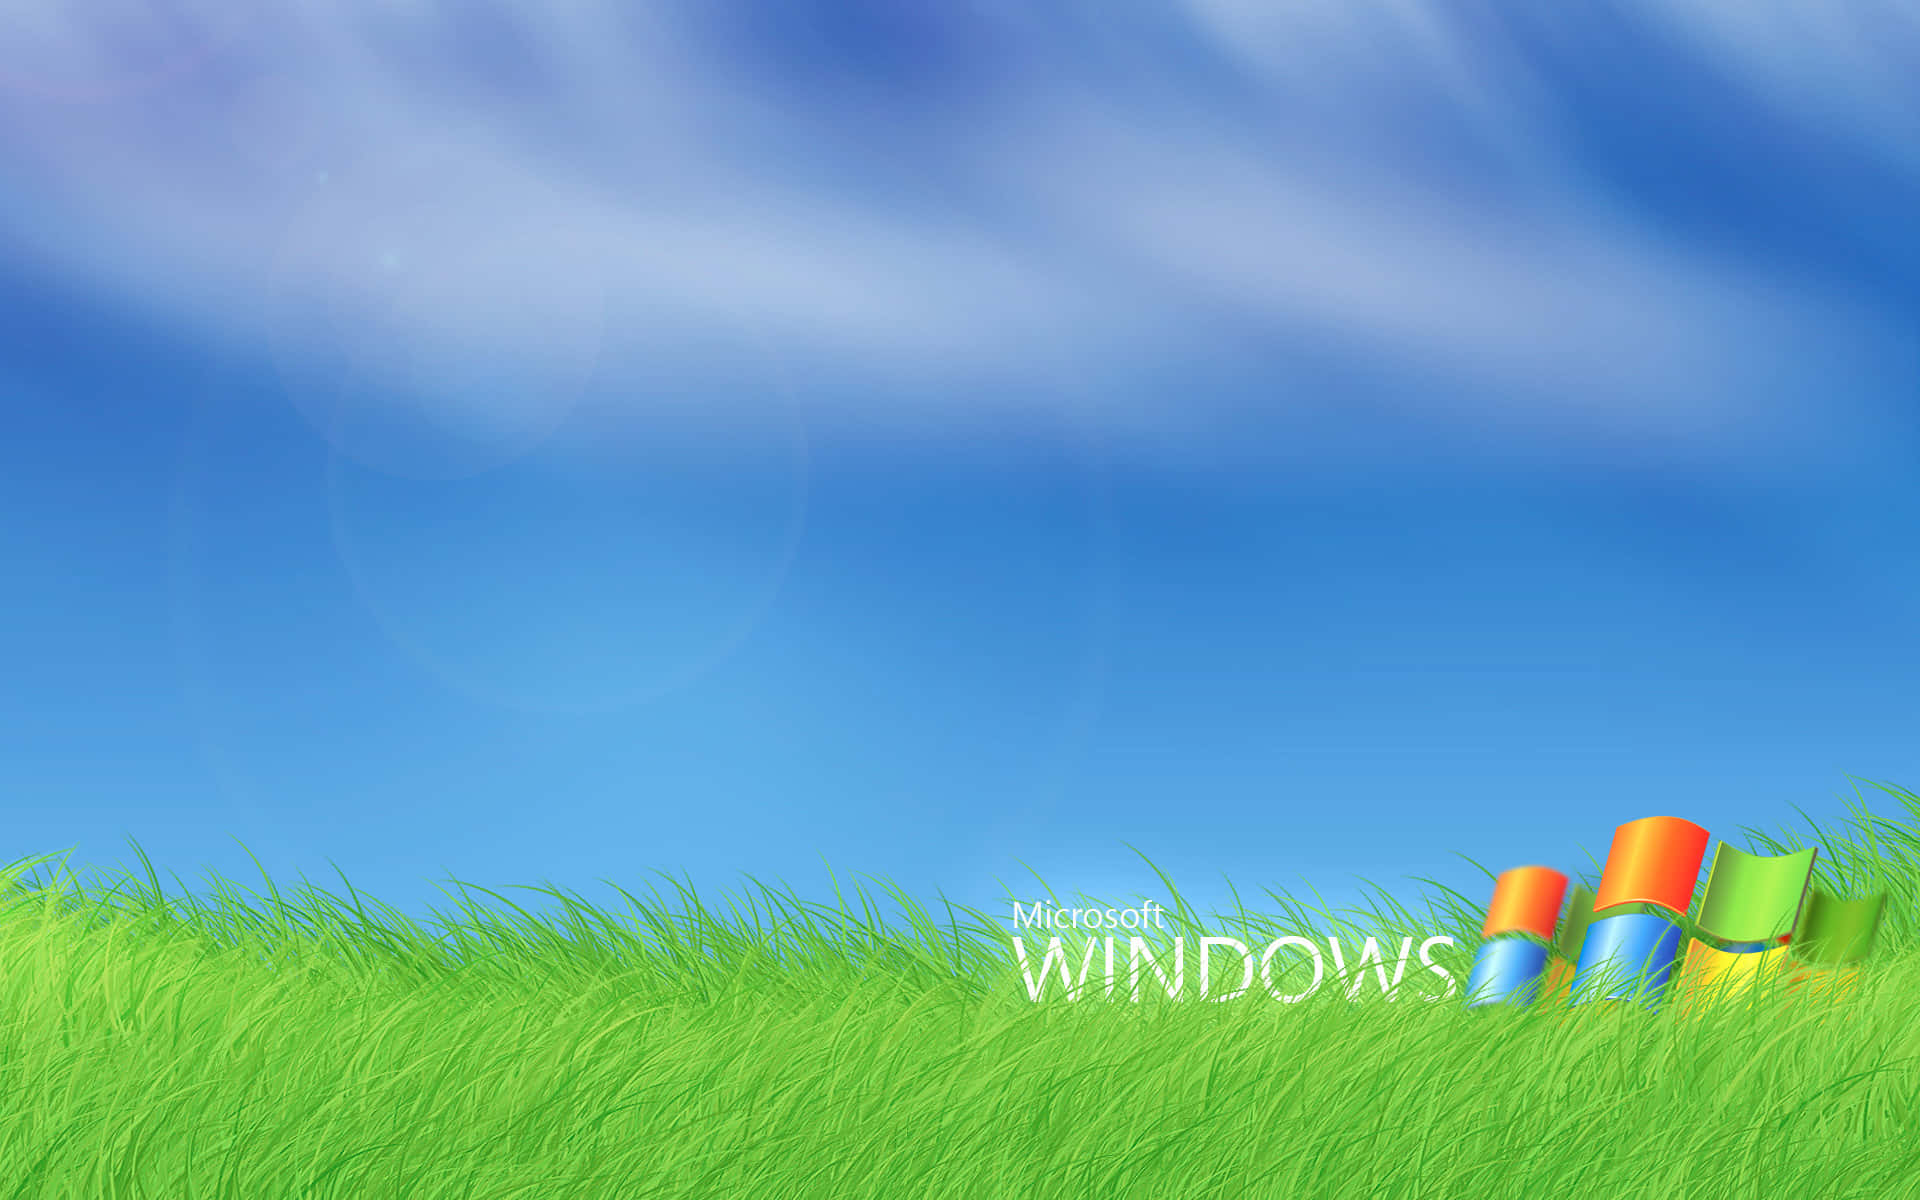 Erstrahleund Leuchte Mit Windows 7